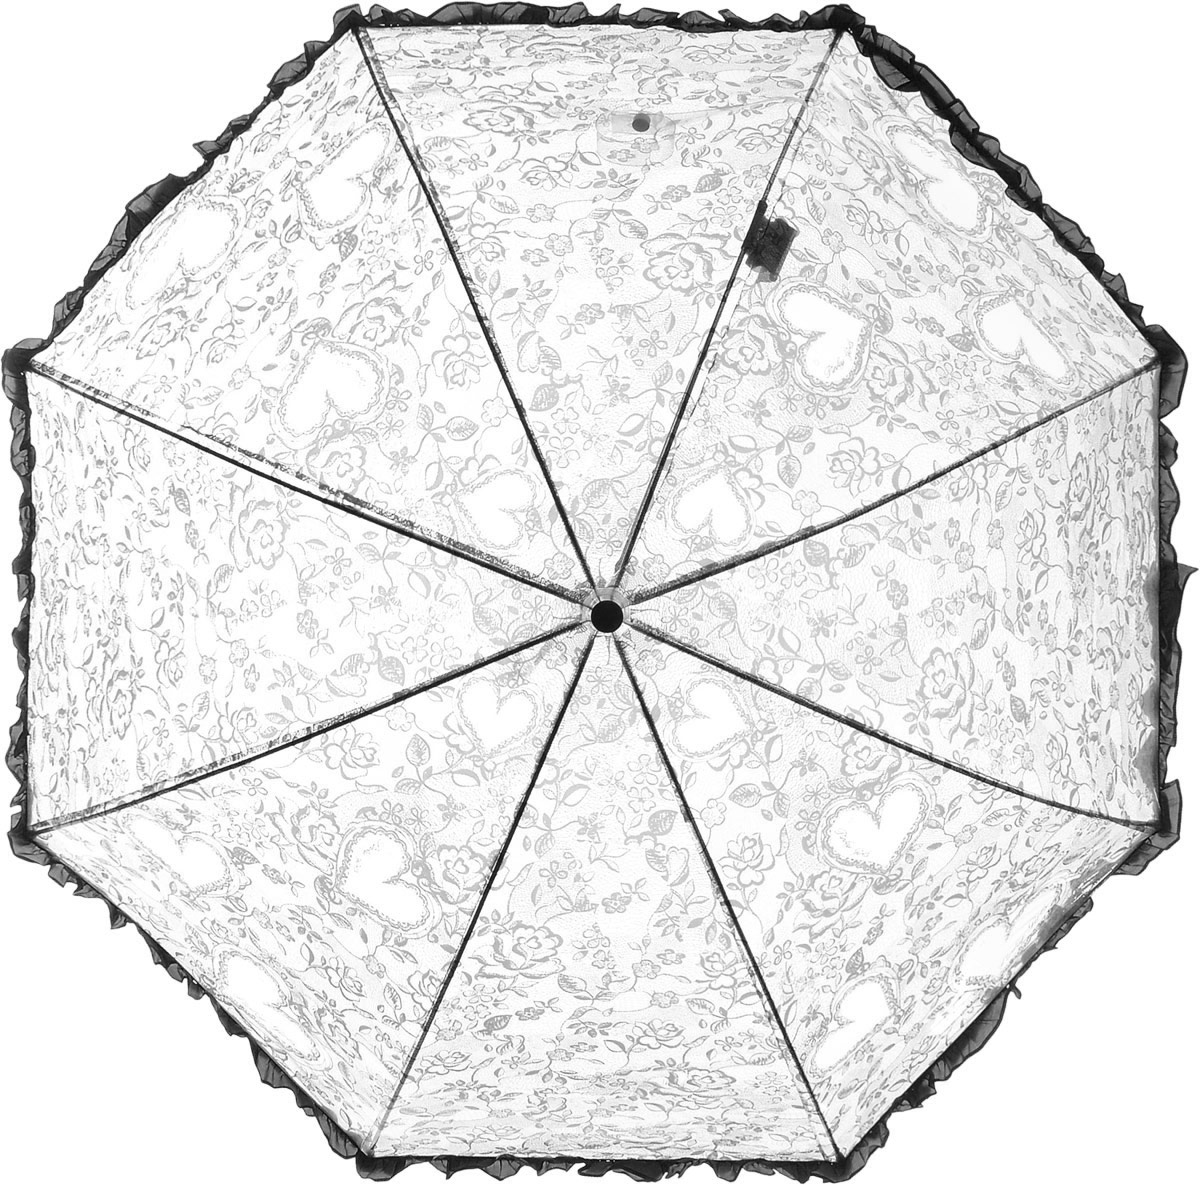 Зонт детский Airton, механический, трость, цвет: прозрачный, черный. 1651-06